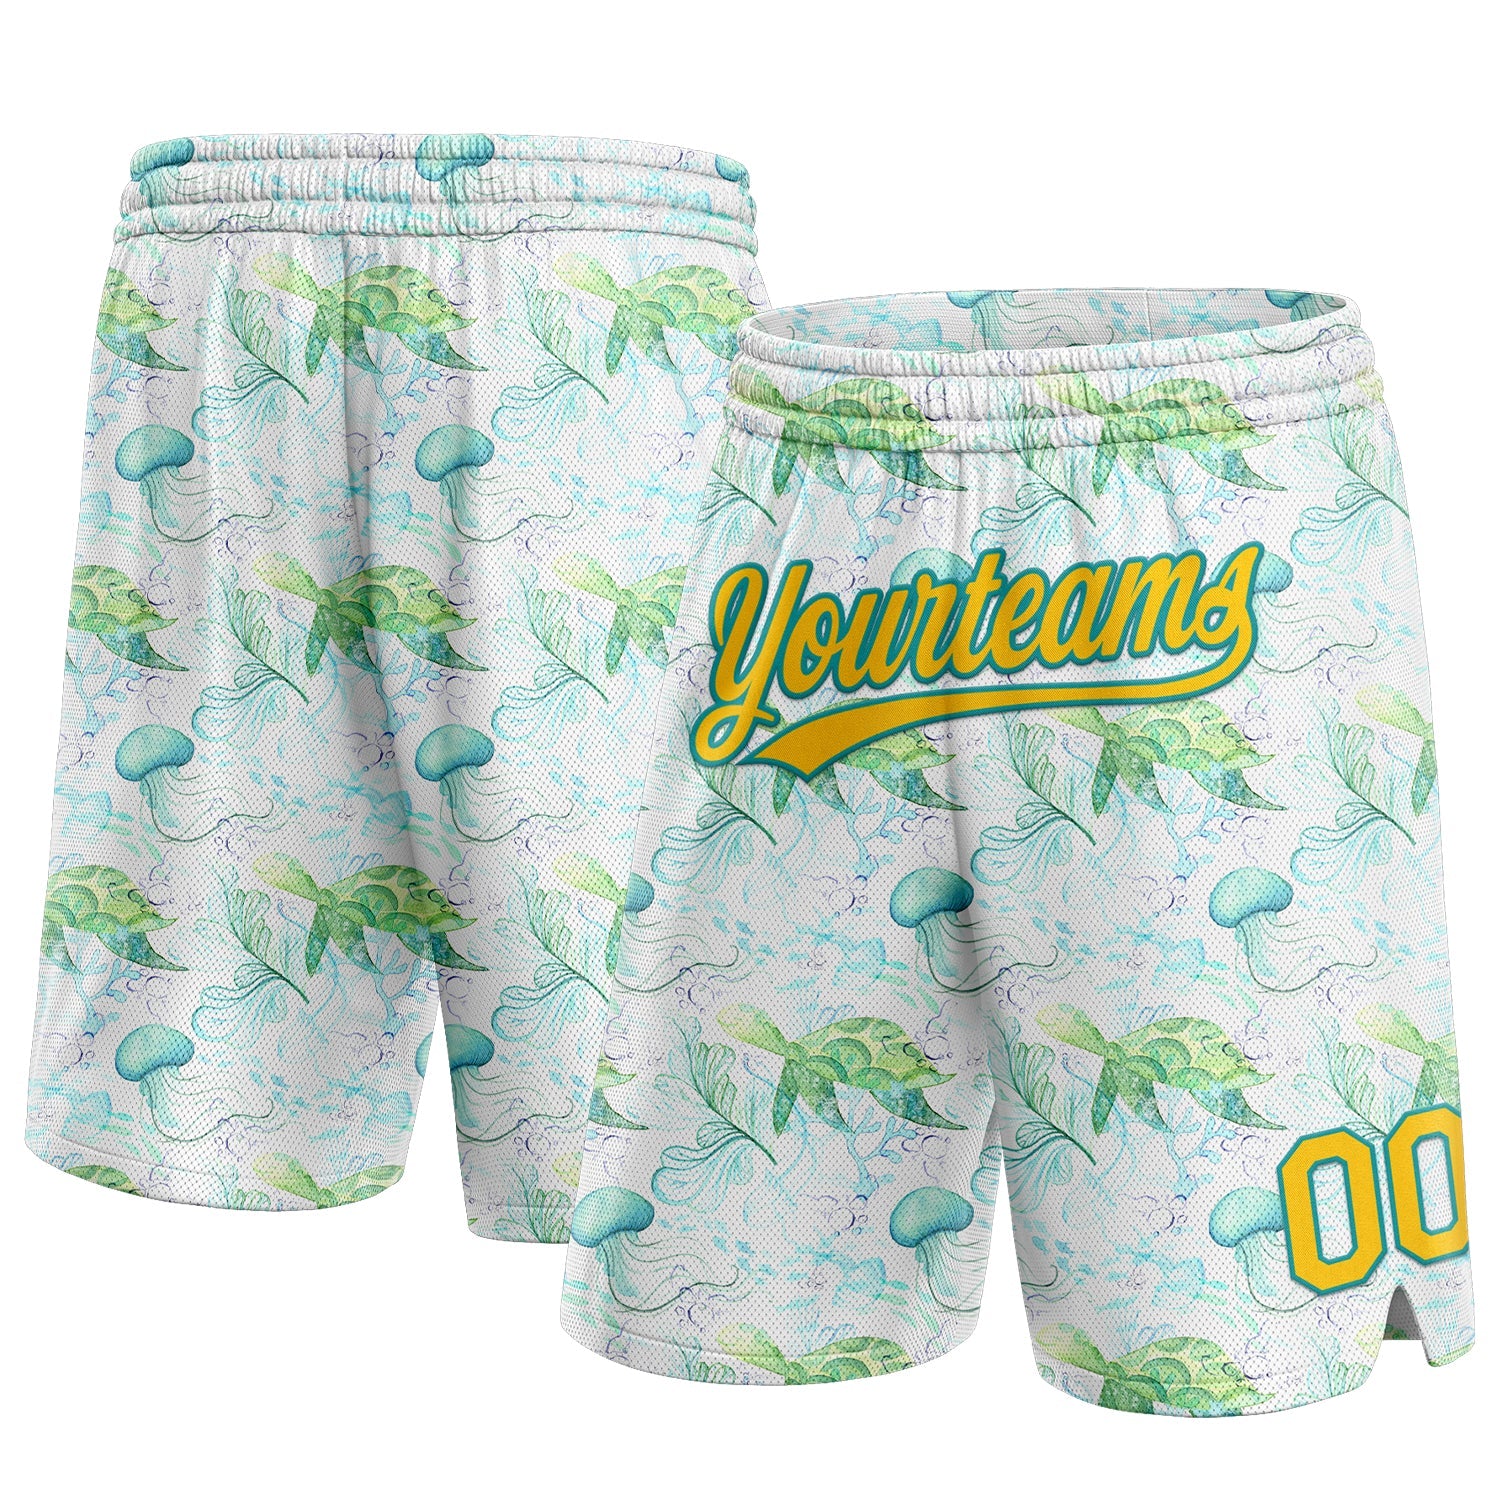 Benutzerdefinierte weiße, gelb-blaugrüne 3D-Muster, Wasserpflanzen und Quallen, authentische Basketball-Shorts